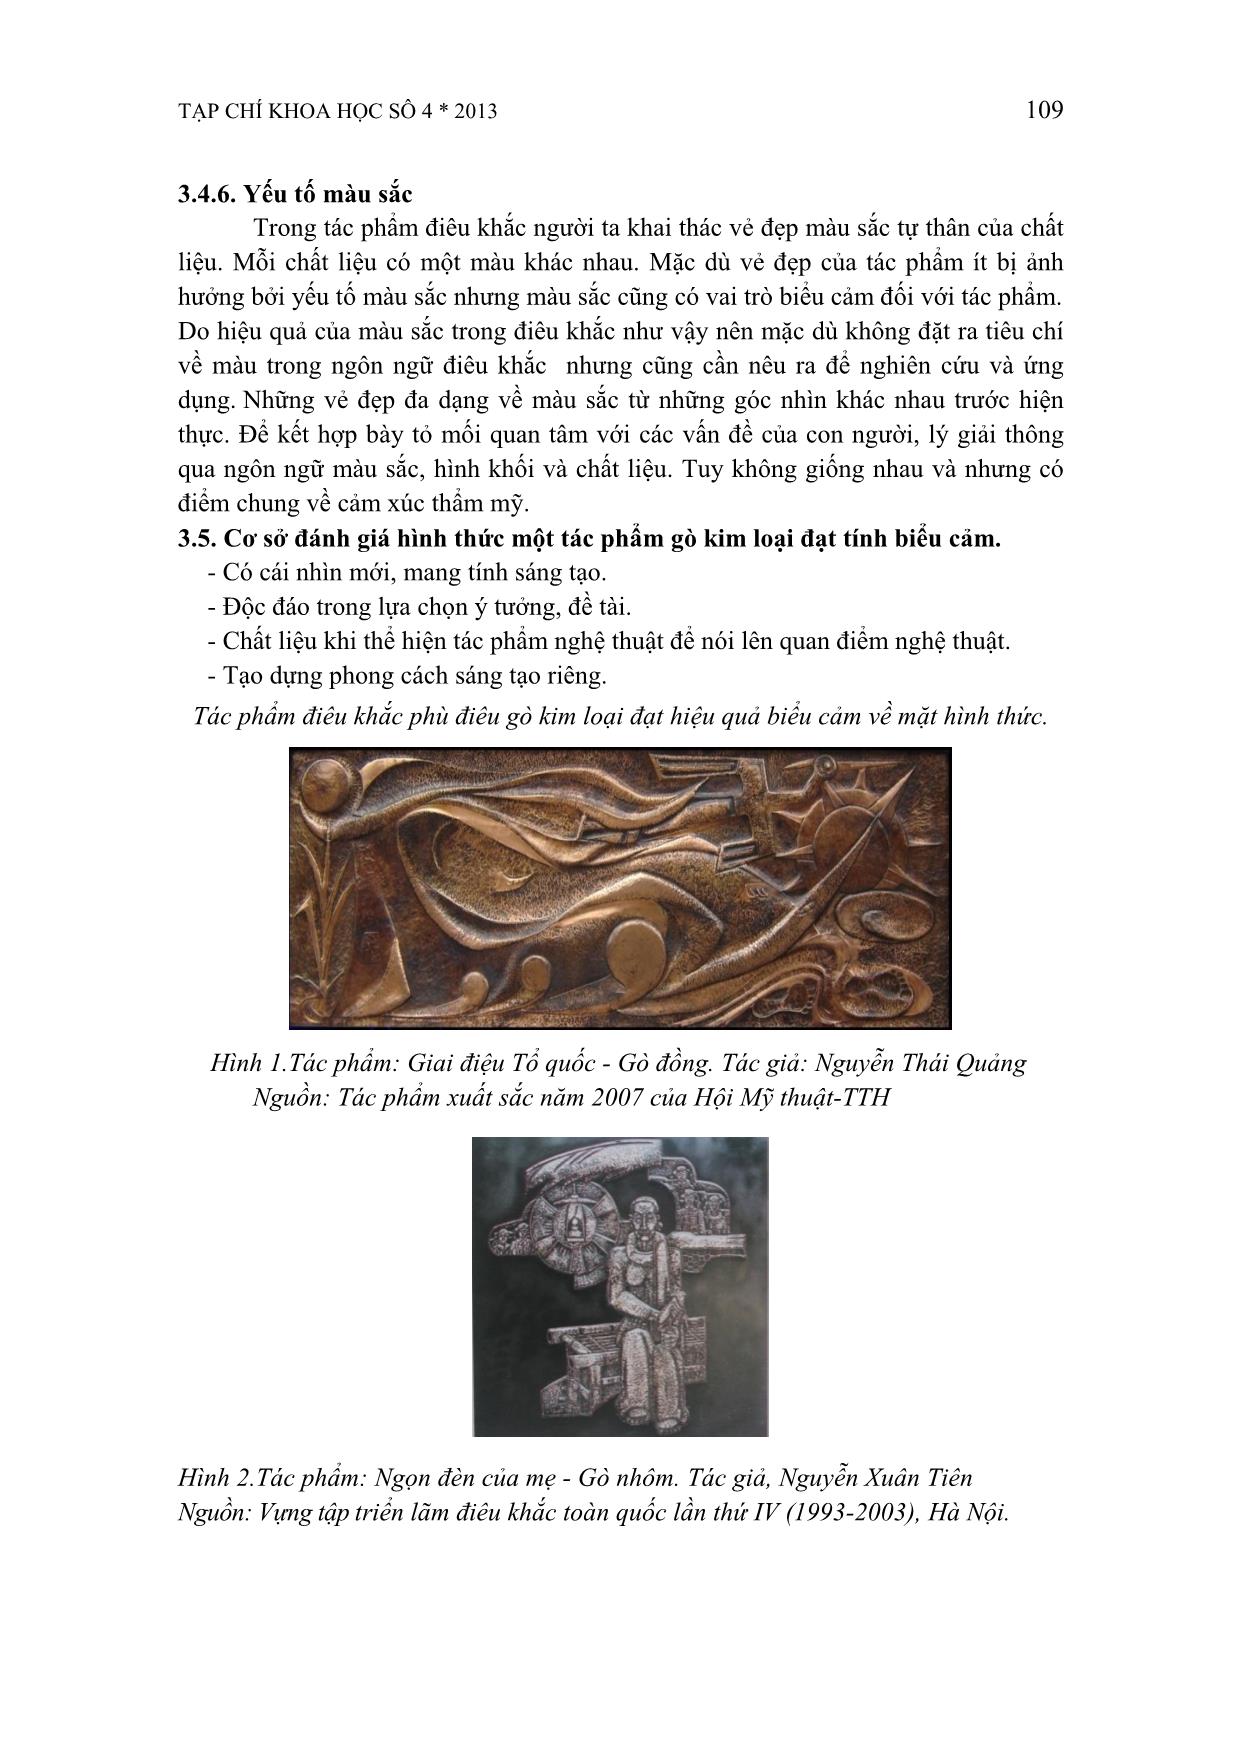 Tính biểu cảm của hình thức gò kim loại trong tác phẩm điêu khắc trang 8